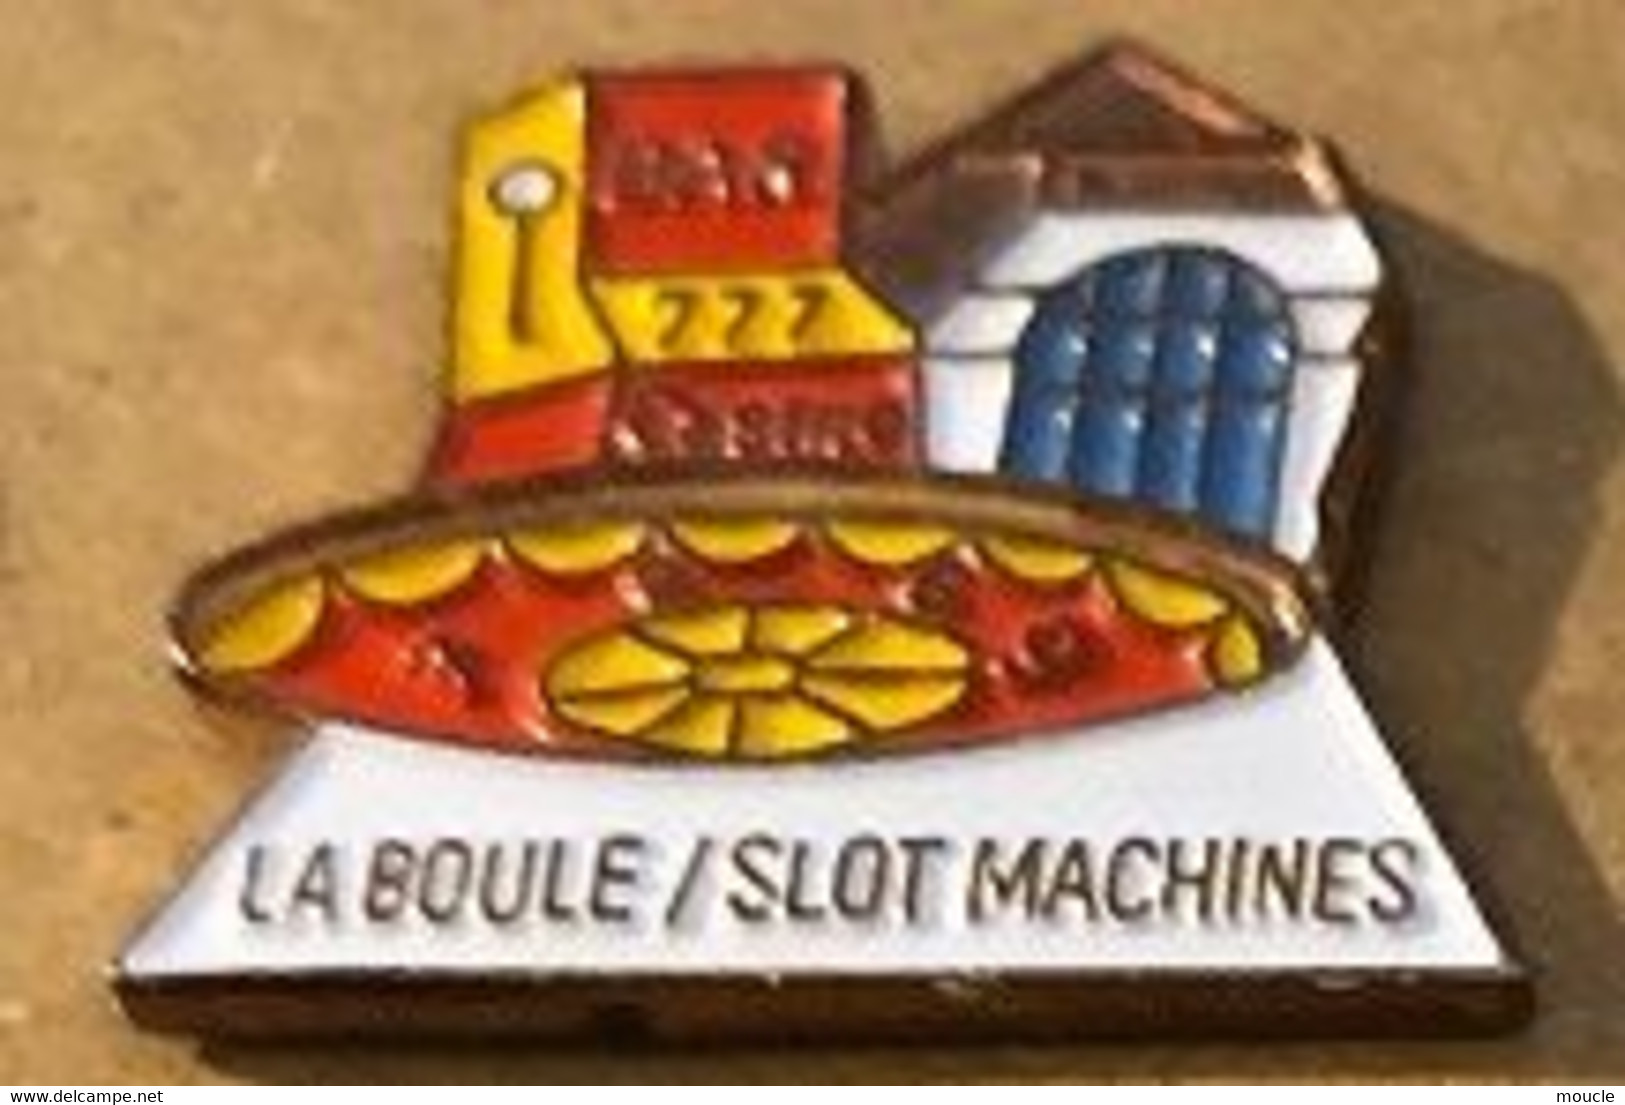 LA BOULE / SLOT MACHINES - BANDIT MANCHOT - CASINO - ROULETTE  - BAR - MACHINE A SOUS - MONEY - ARGENT - GELD -    (16) - Giochi